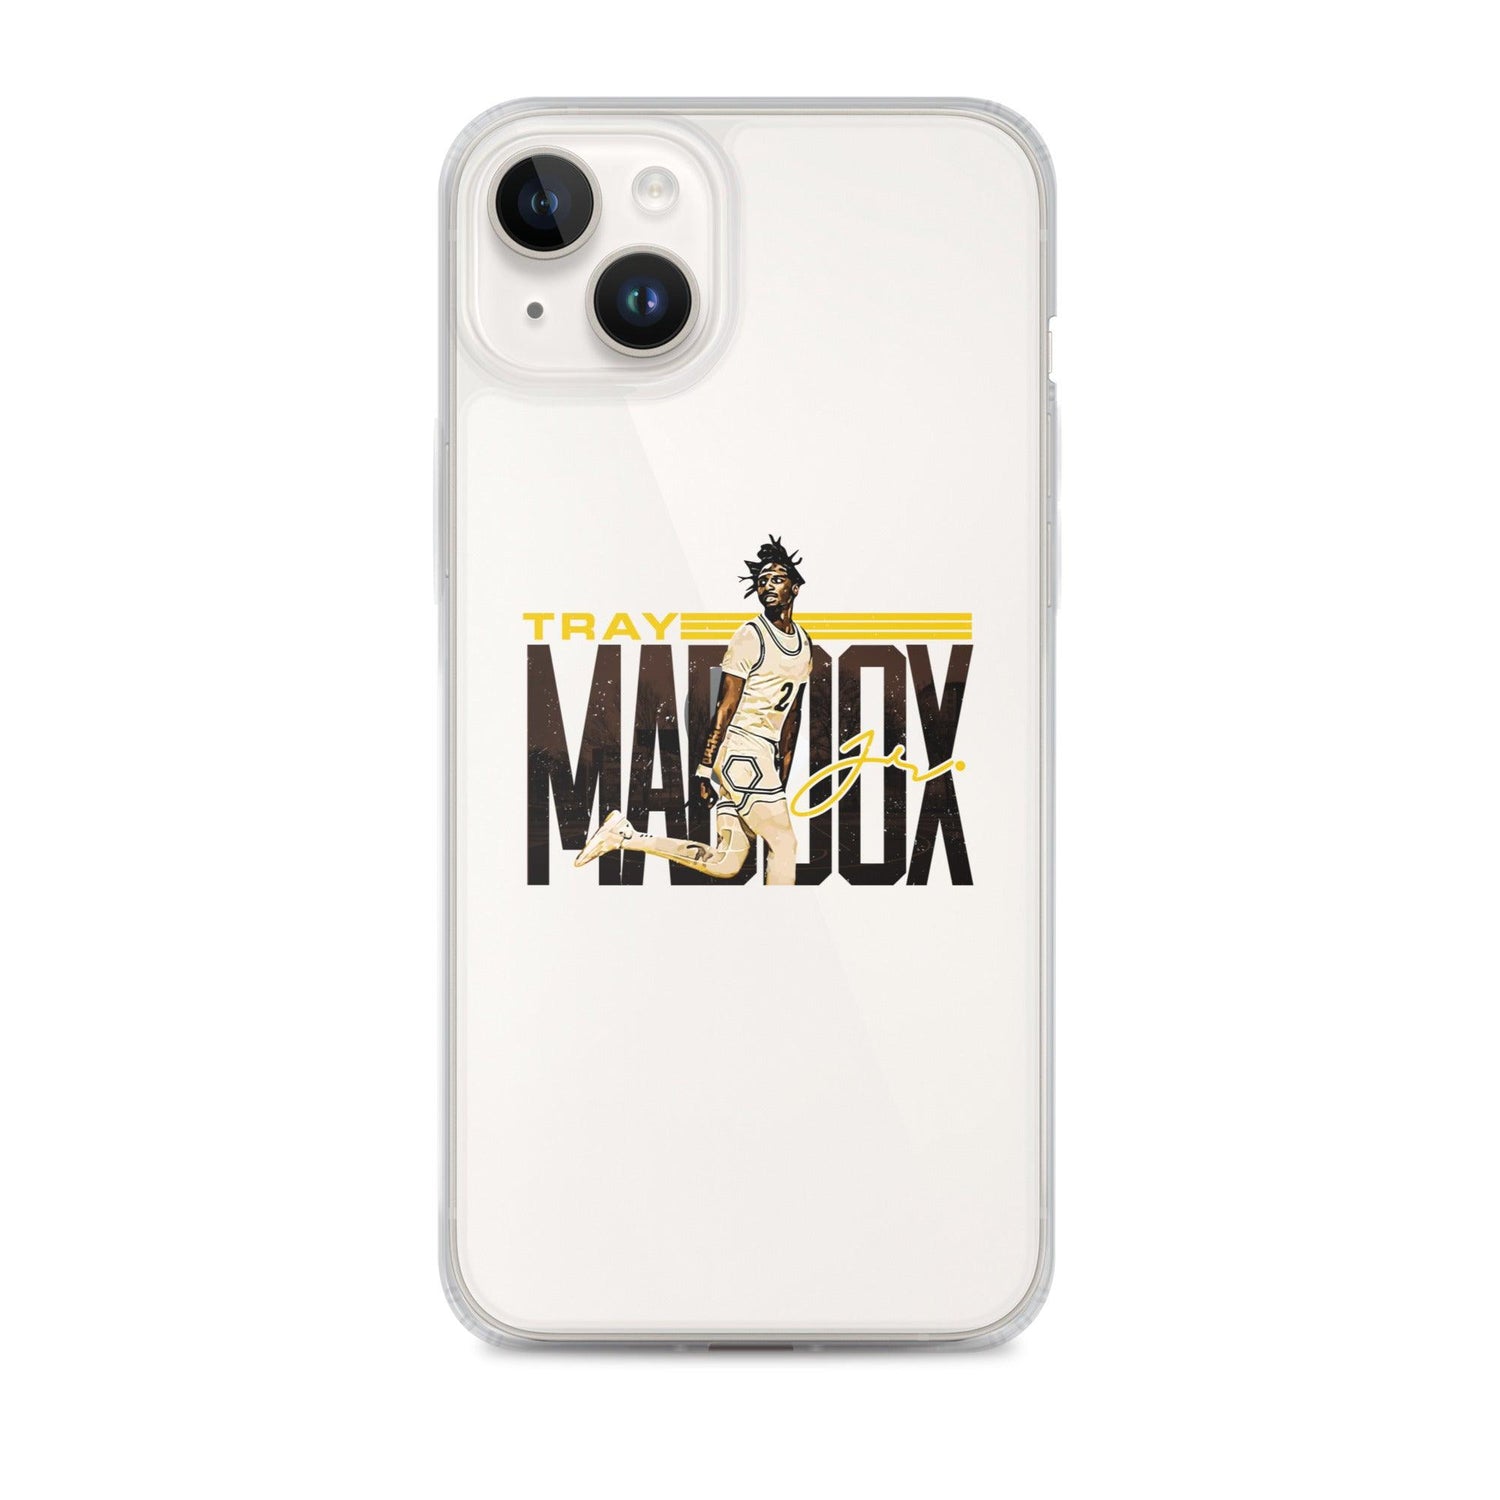 Tray Maddox Jr. "Gameday" iPhone Case - Fan Arch